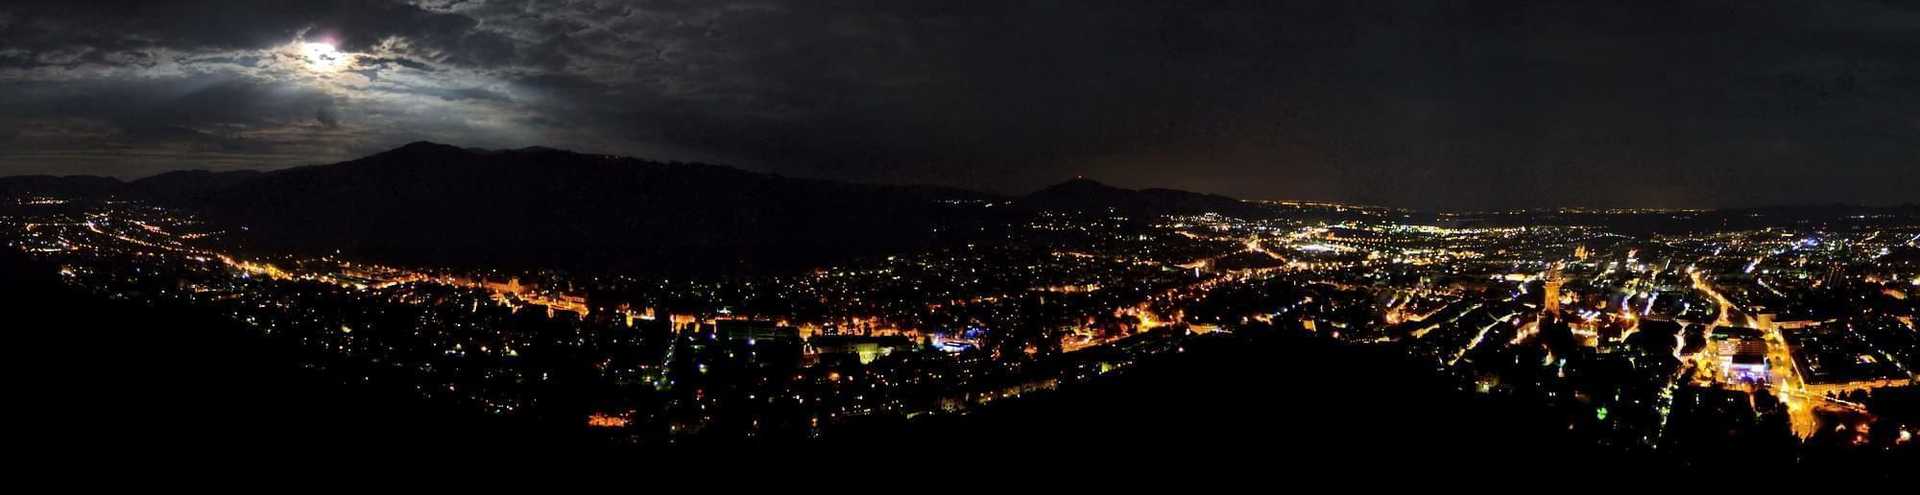 Freiburg At Night